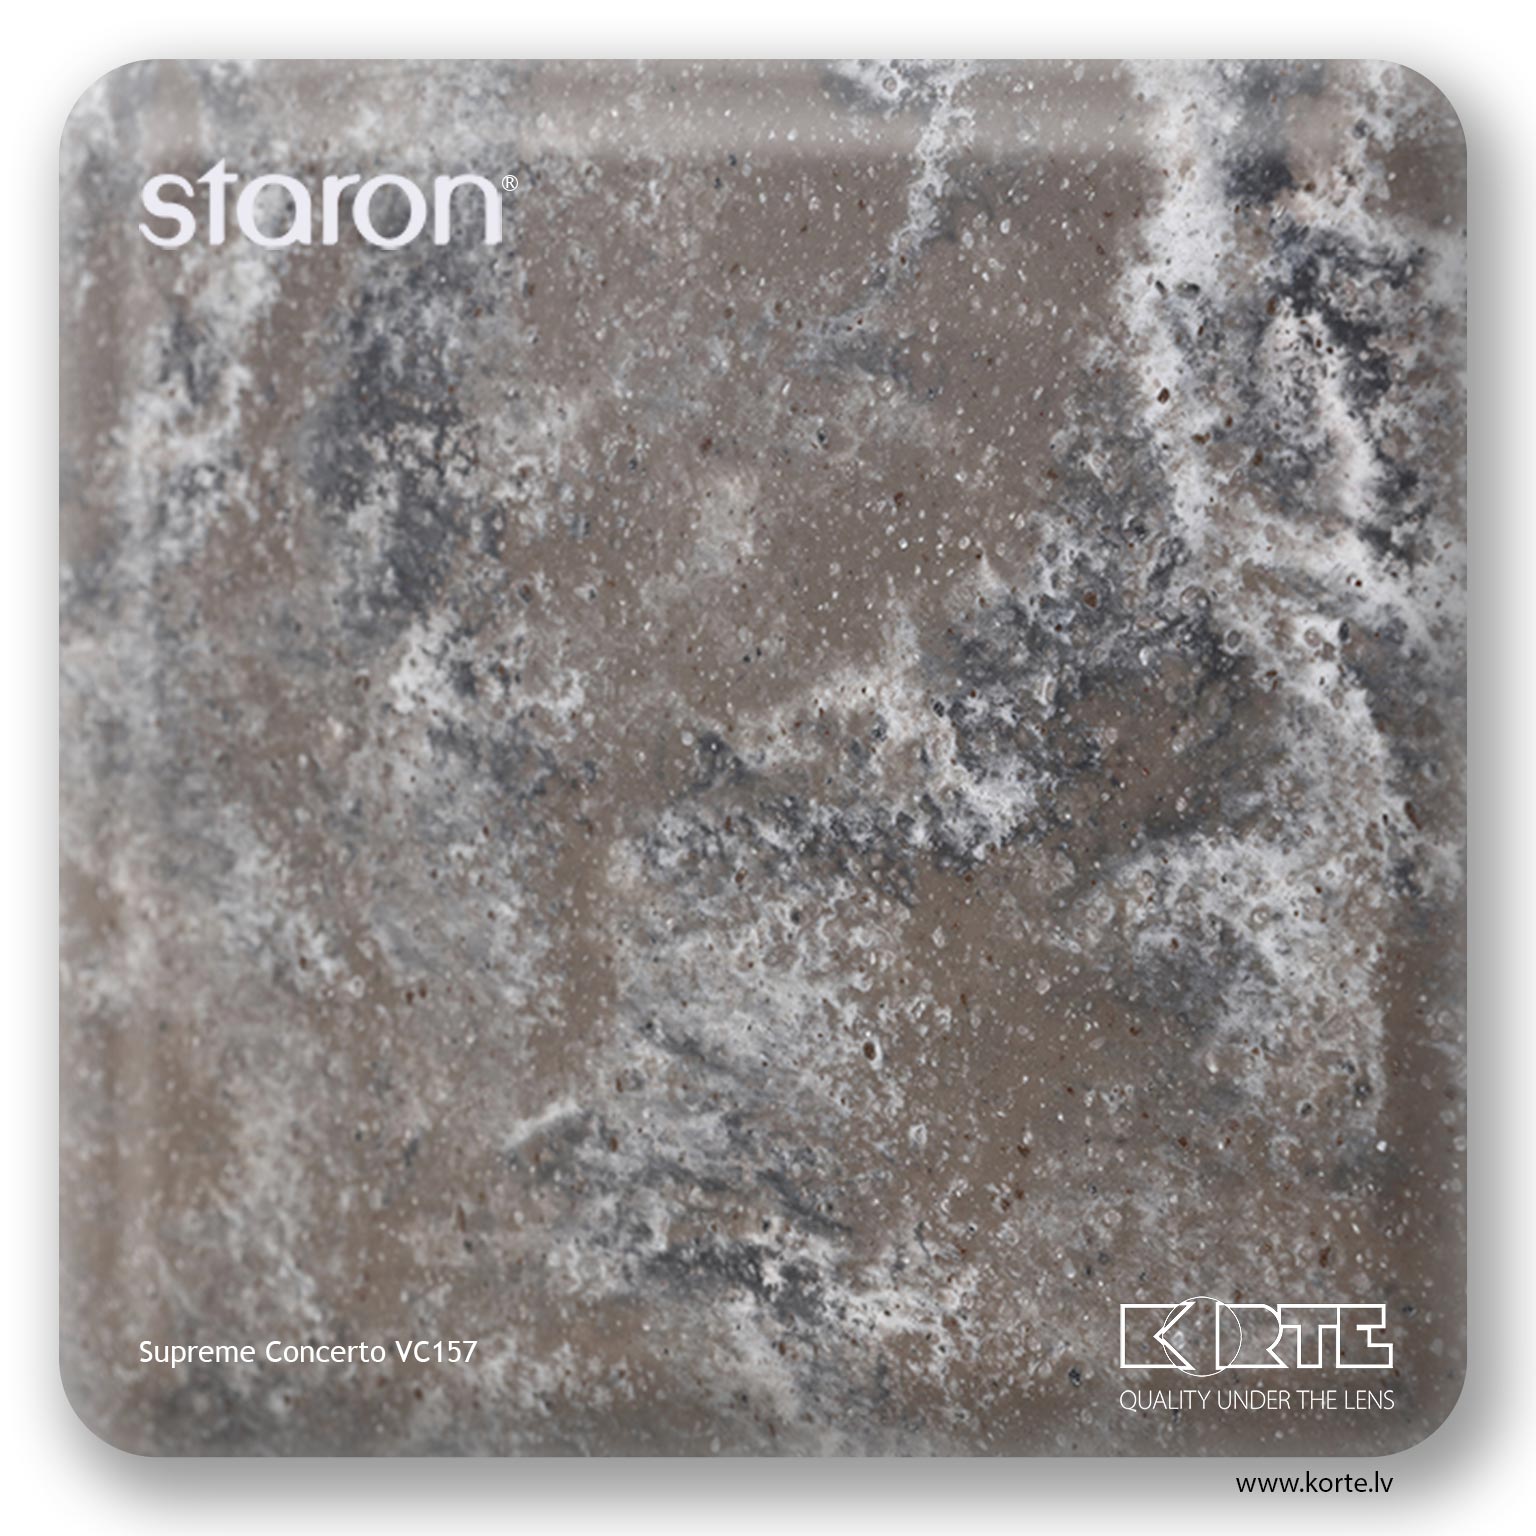 Staron Supreme Concerto VC157